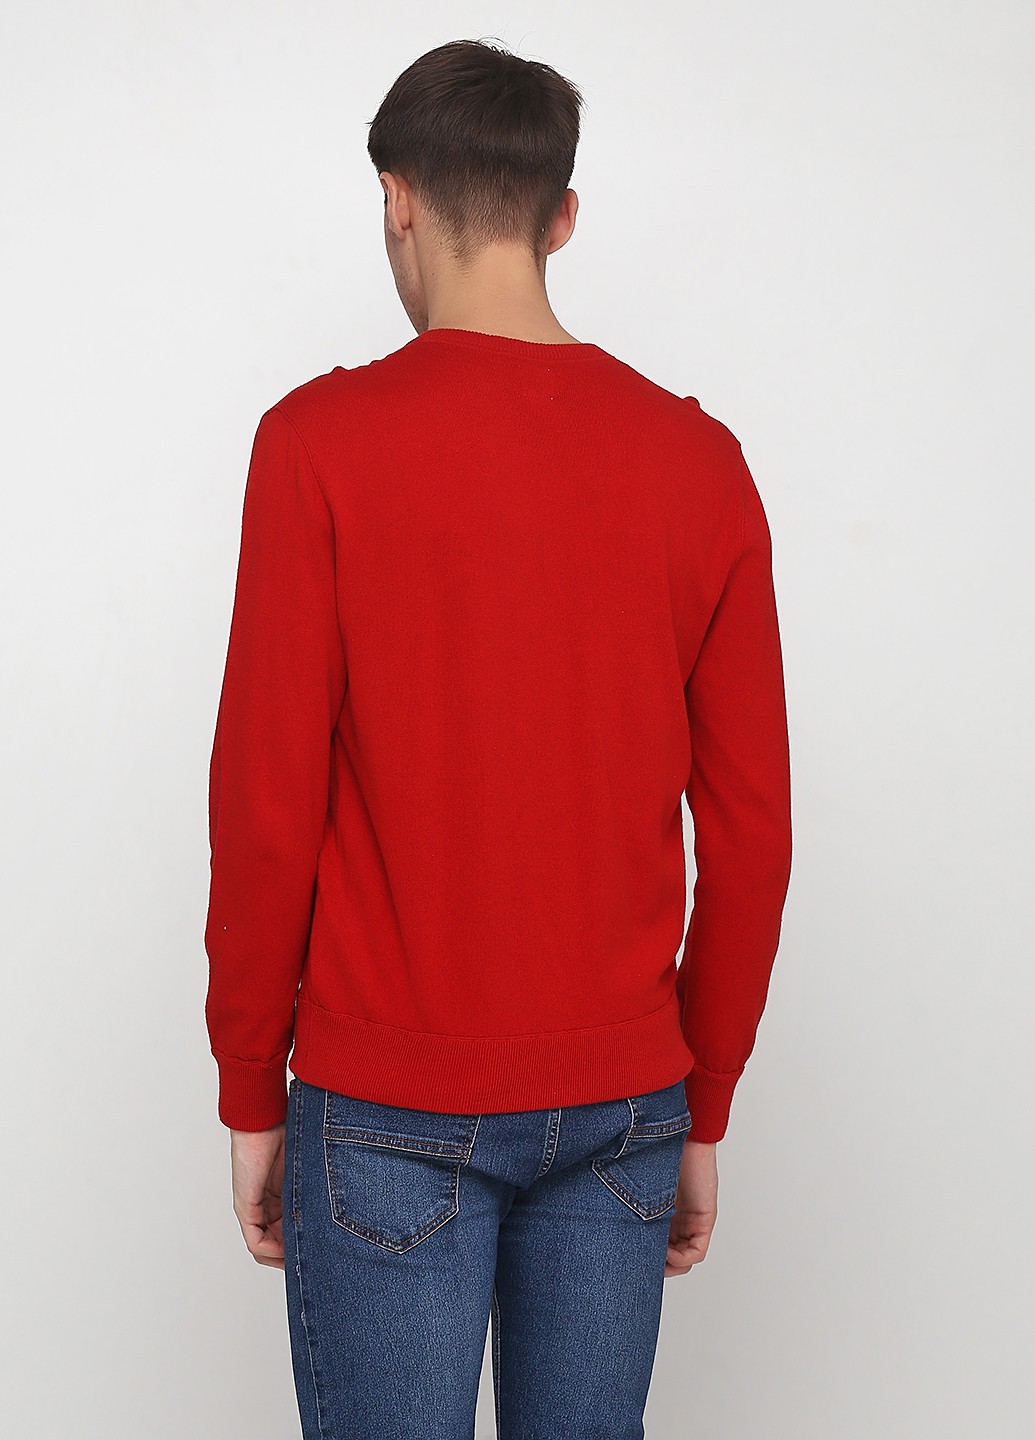 Червоний демісезонний пуловер пуловер Gap